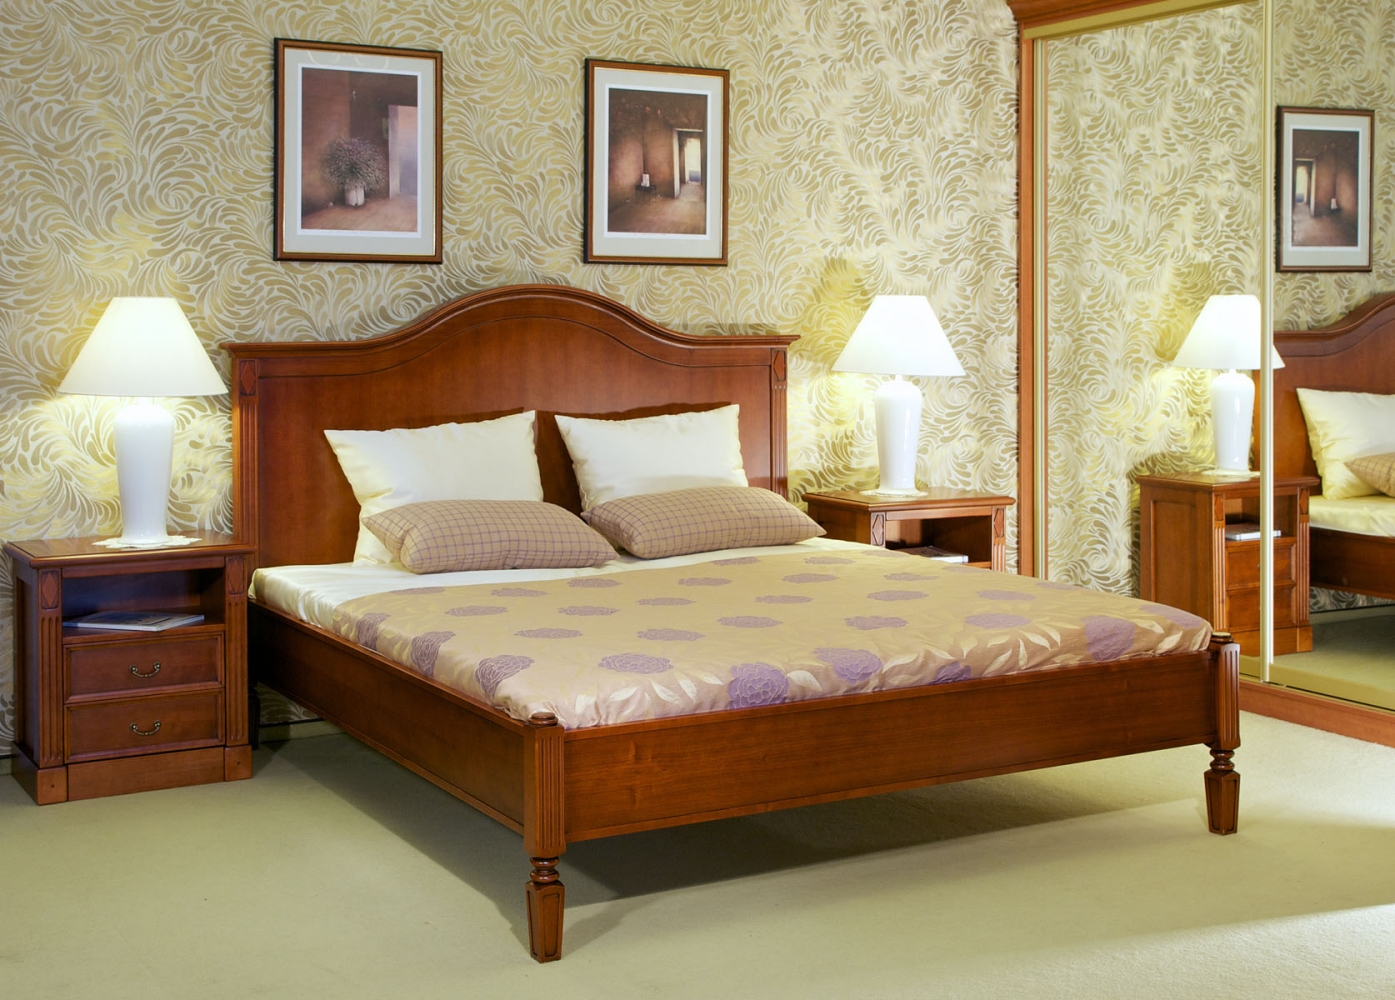 Harmony manželská postel s nočními stolky.jpg